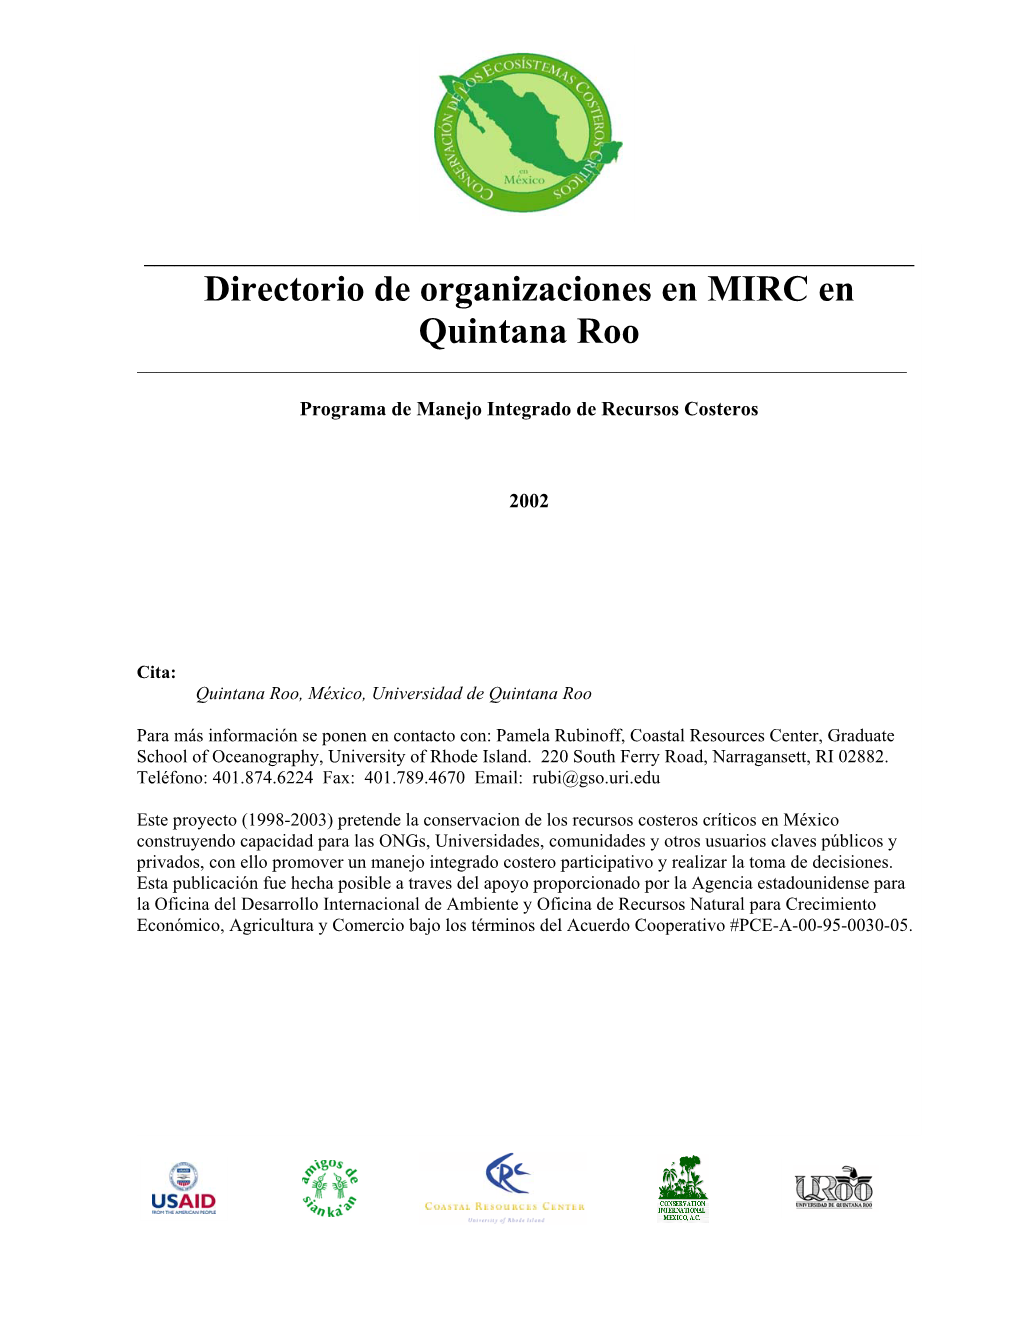 Directorio De Organizaciones En MIRC En Quintana Roo ______